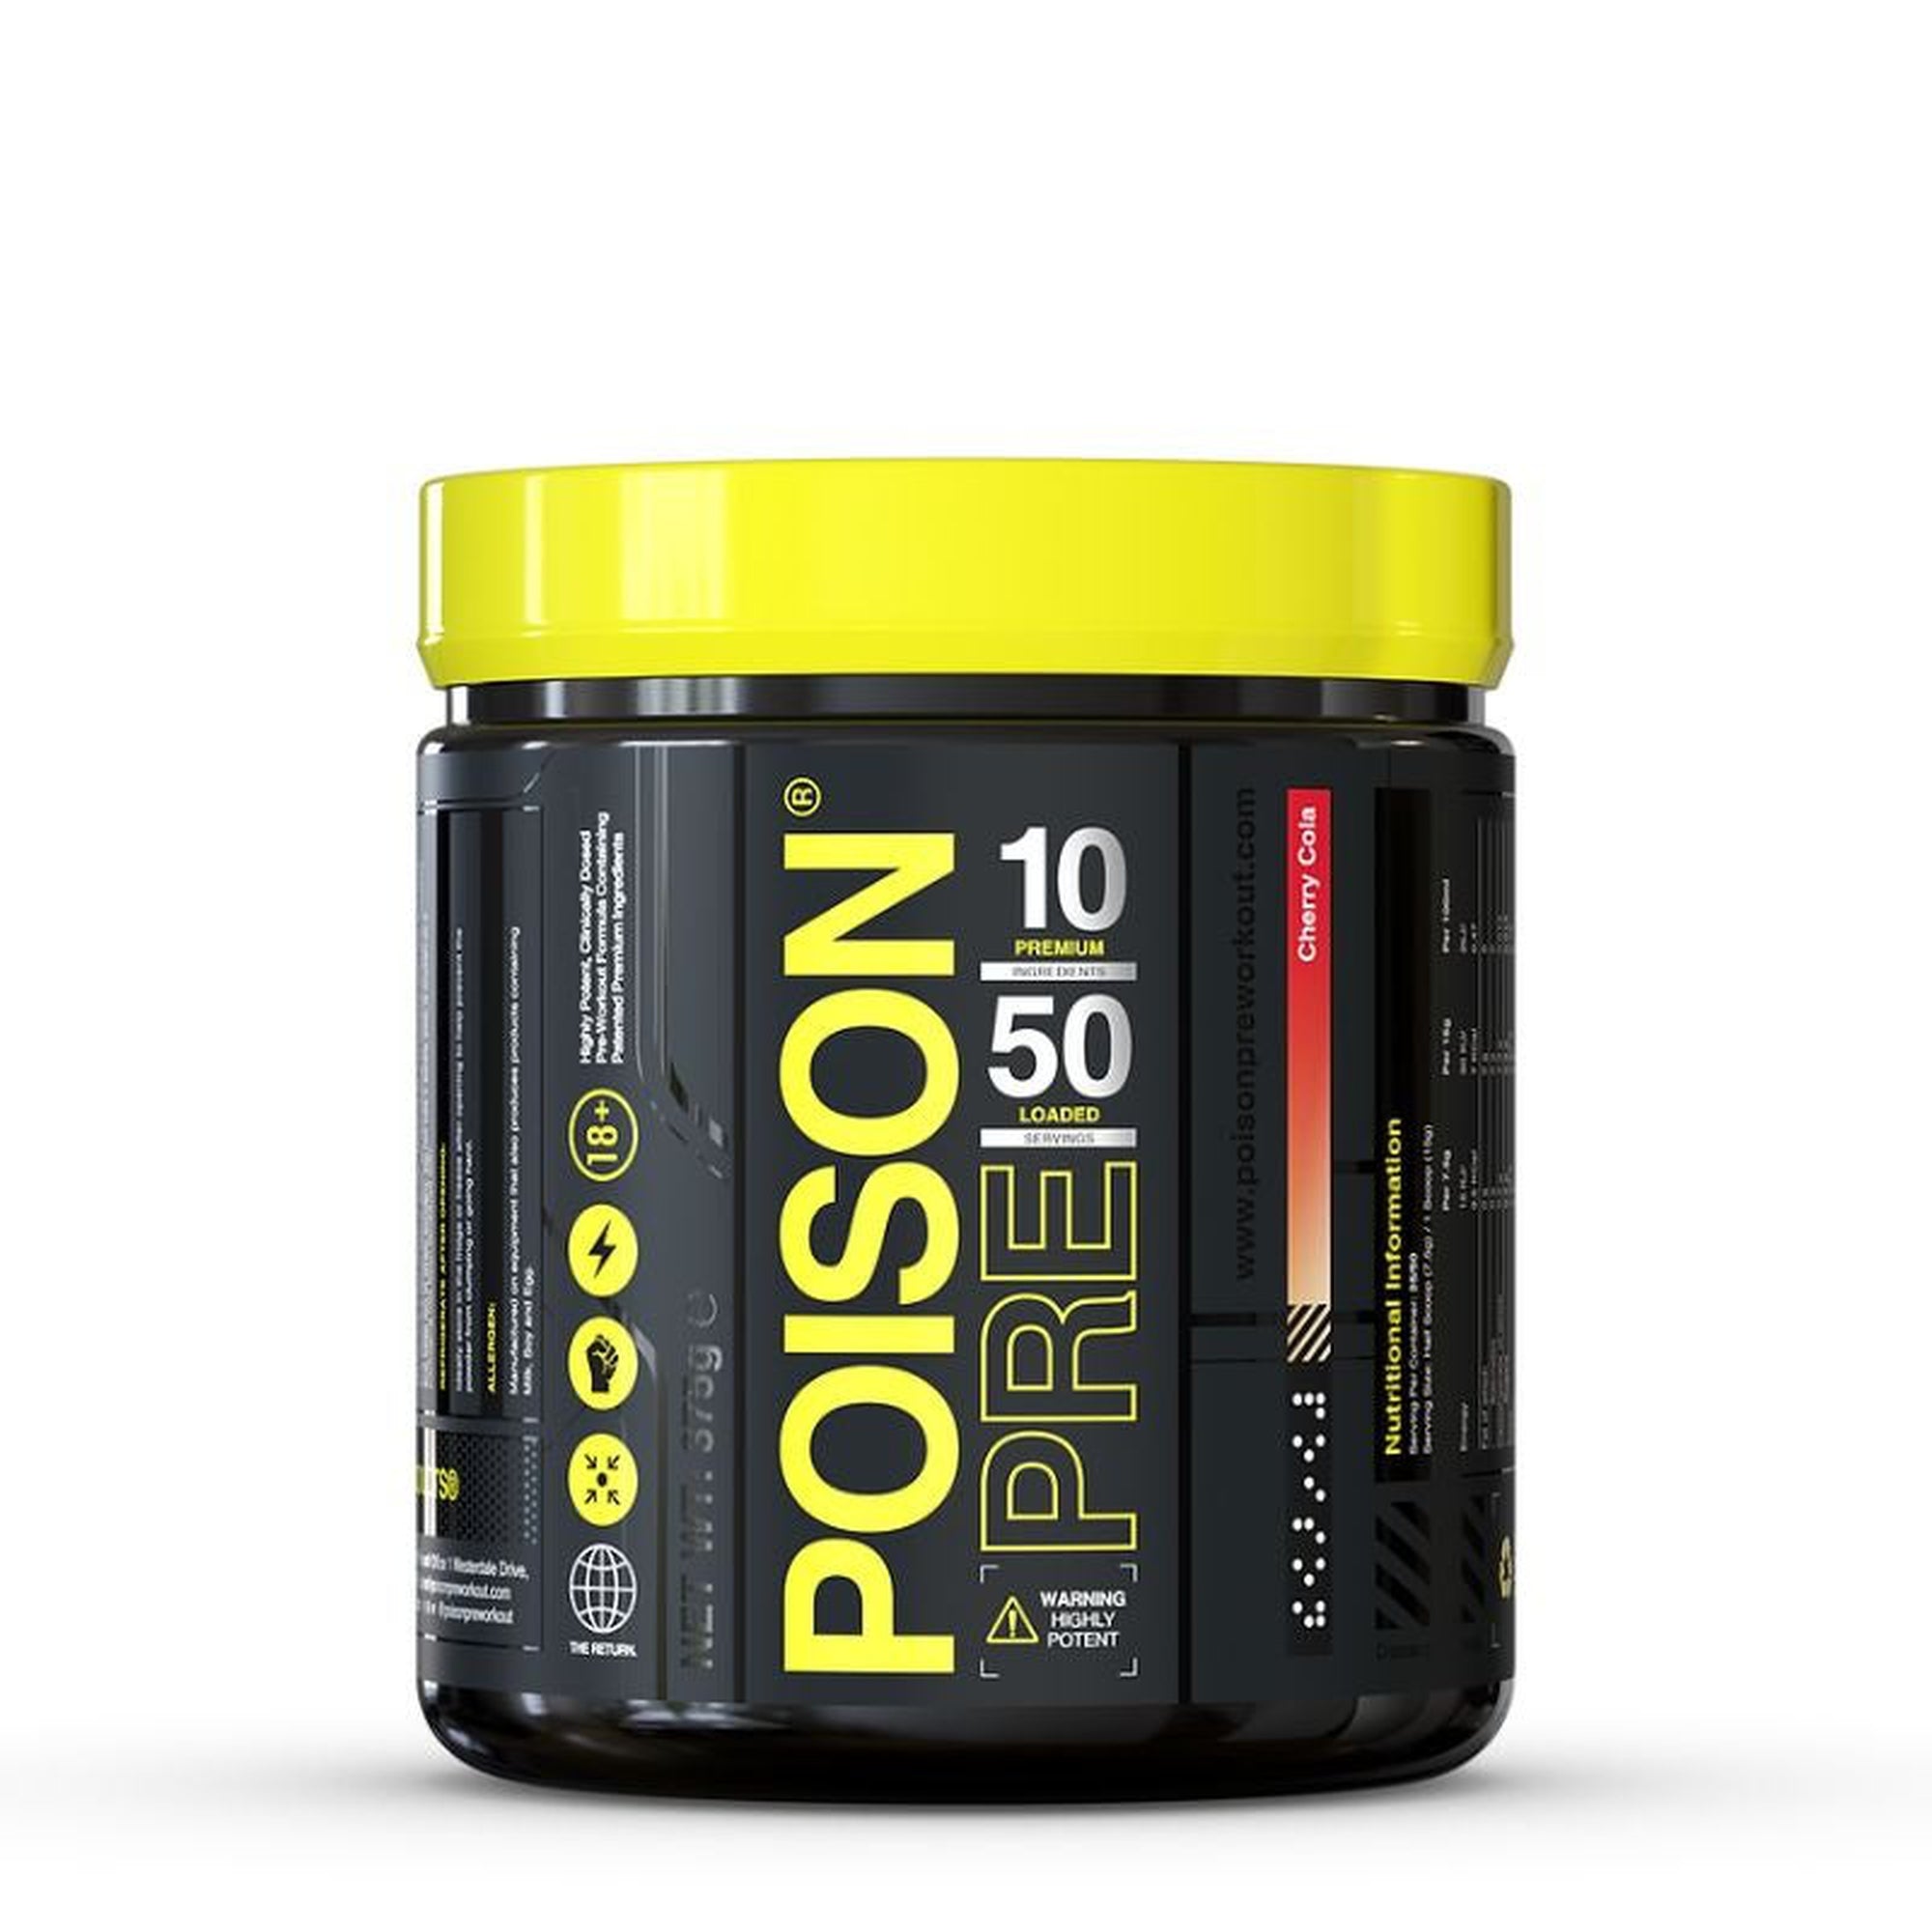 Poison PWO Pre Workout